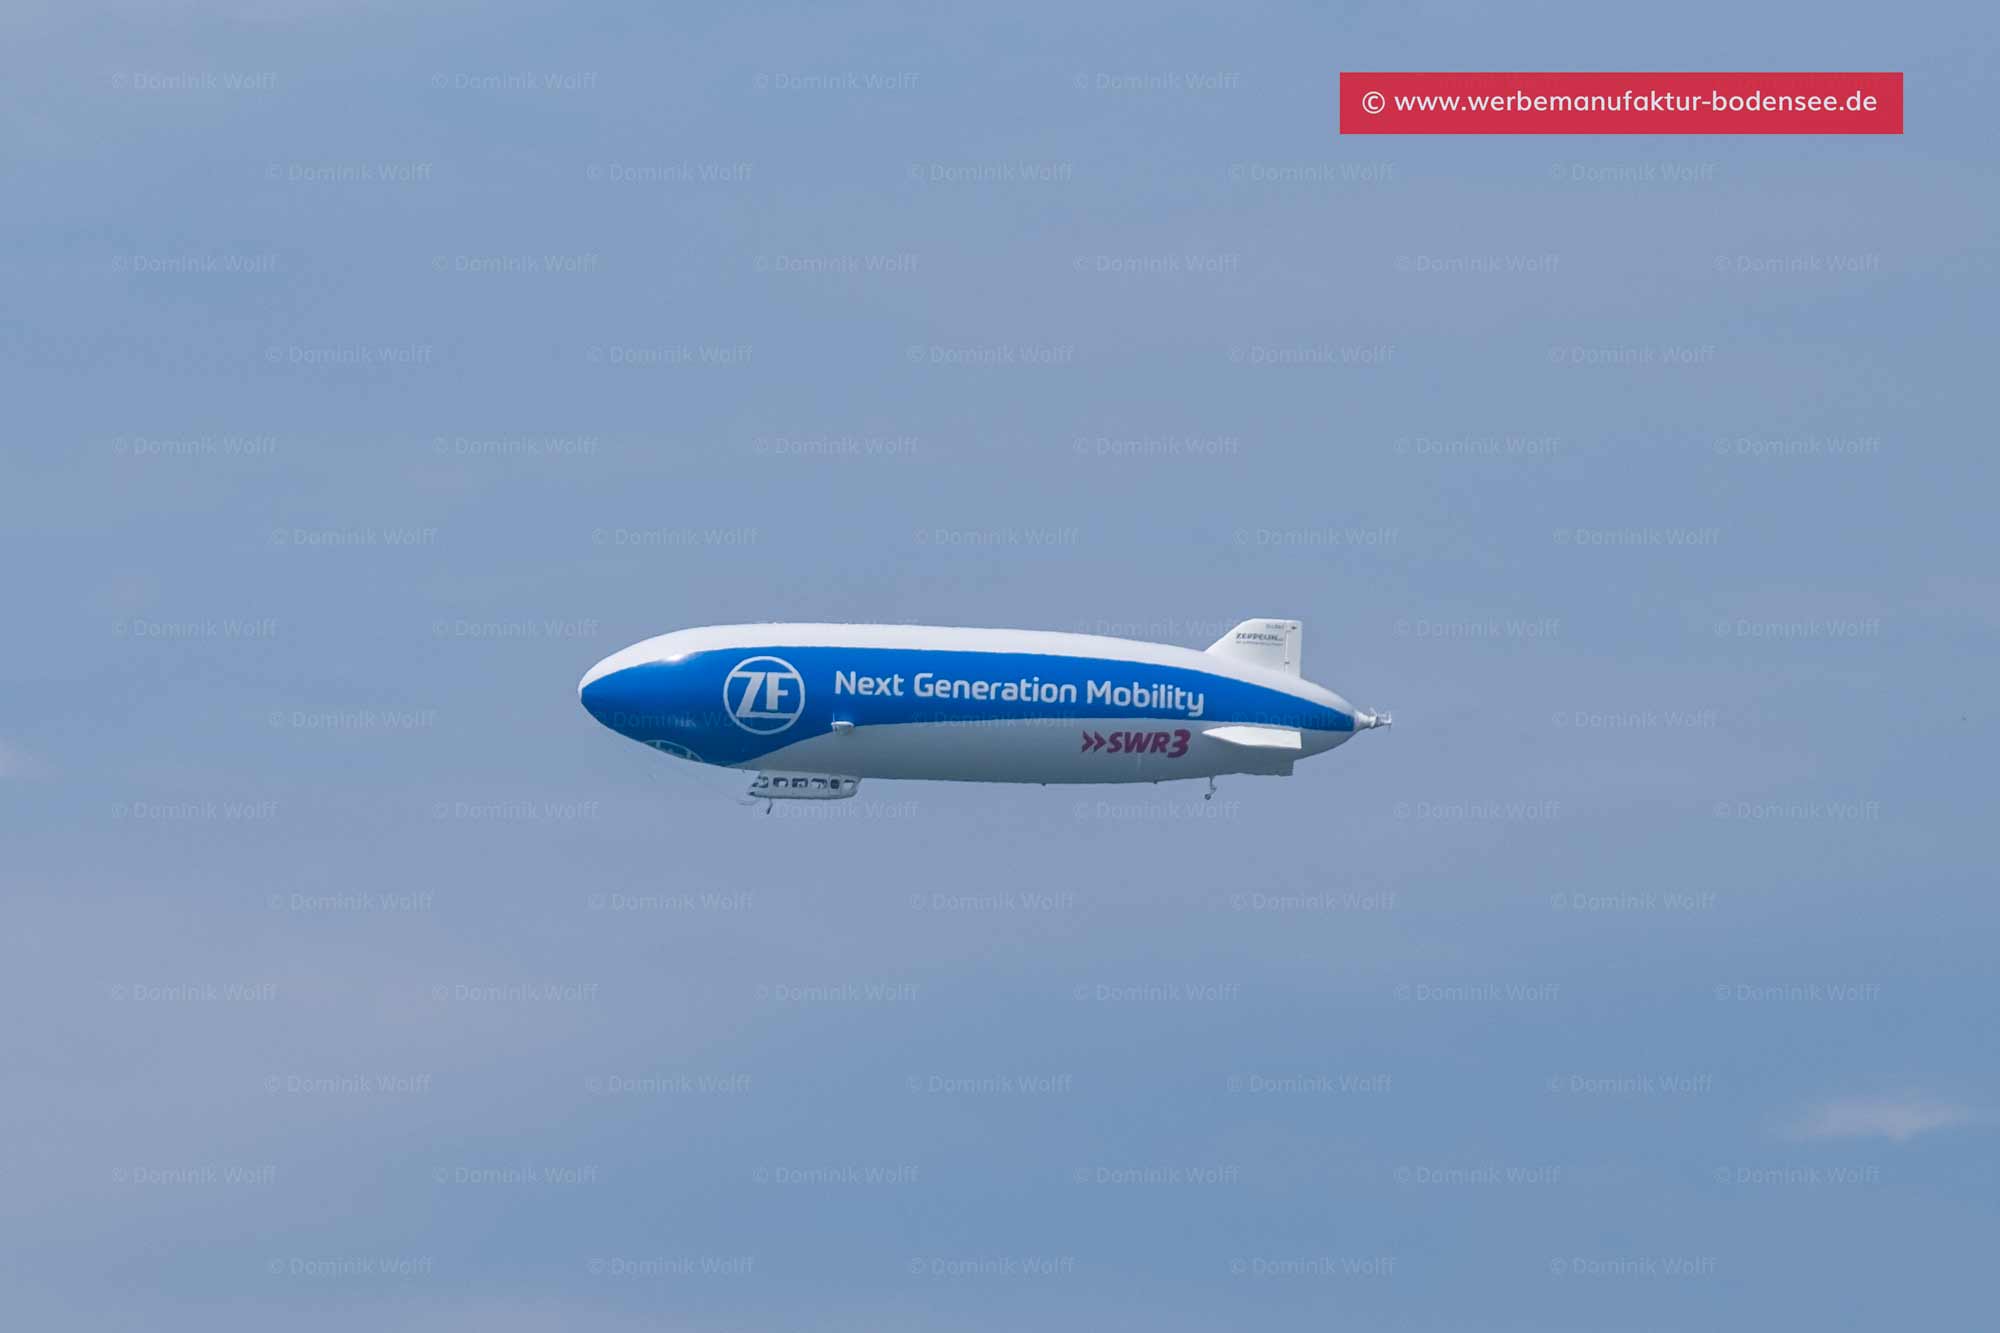 Bild + Foto - Bodensee-Rundflug mit dem Zeppelin NT